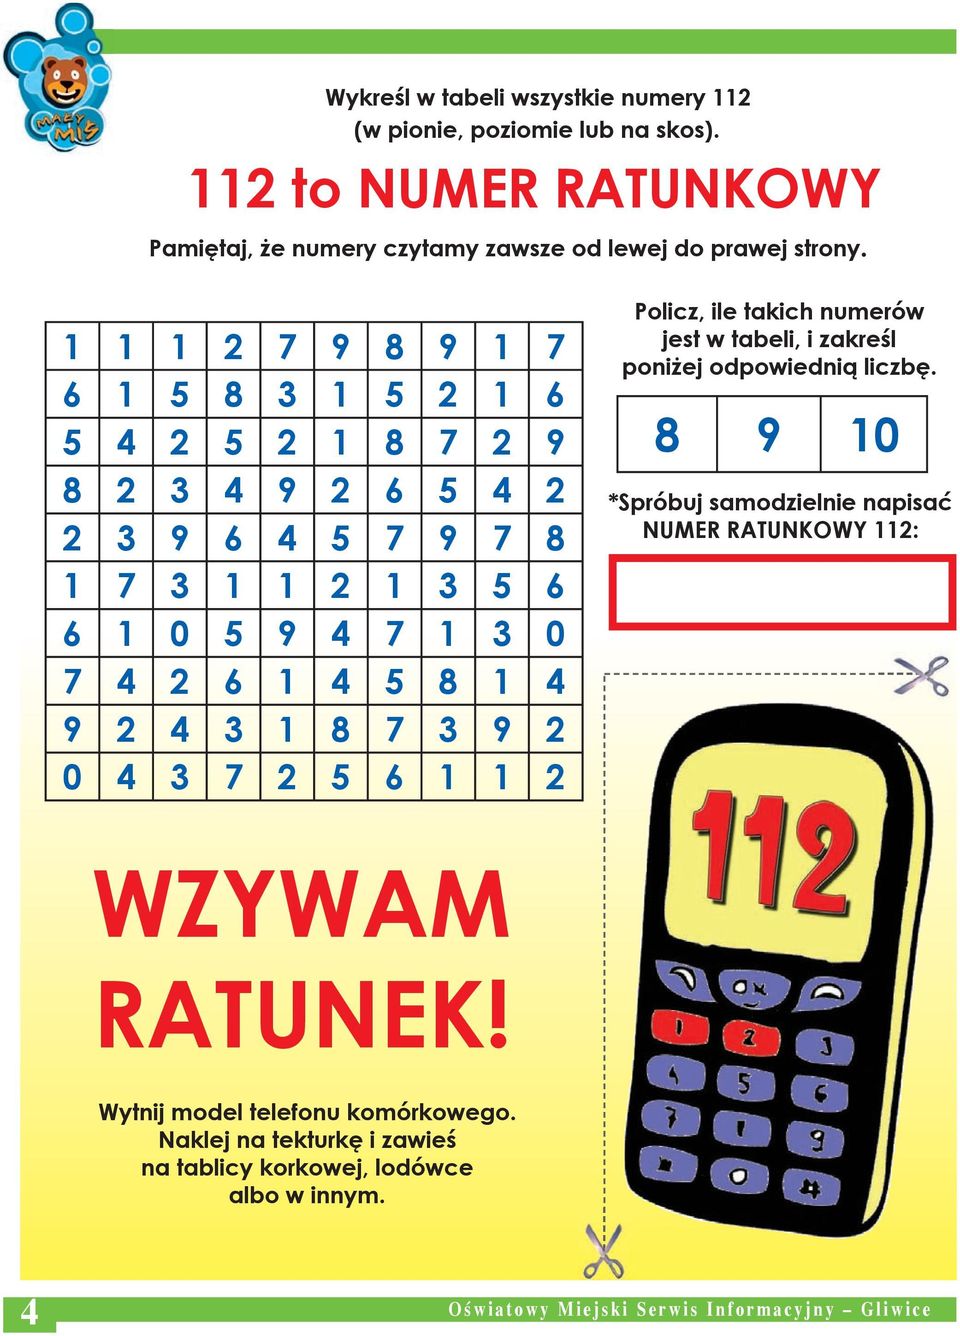 3 9 2 0 4 3 7 2 5 6 1 1 2 Policz, ile takich numerów jest w tabeli, i zakreśl poniżej odpowiednią liczbę.